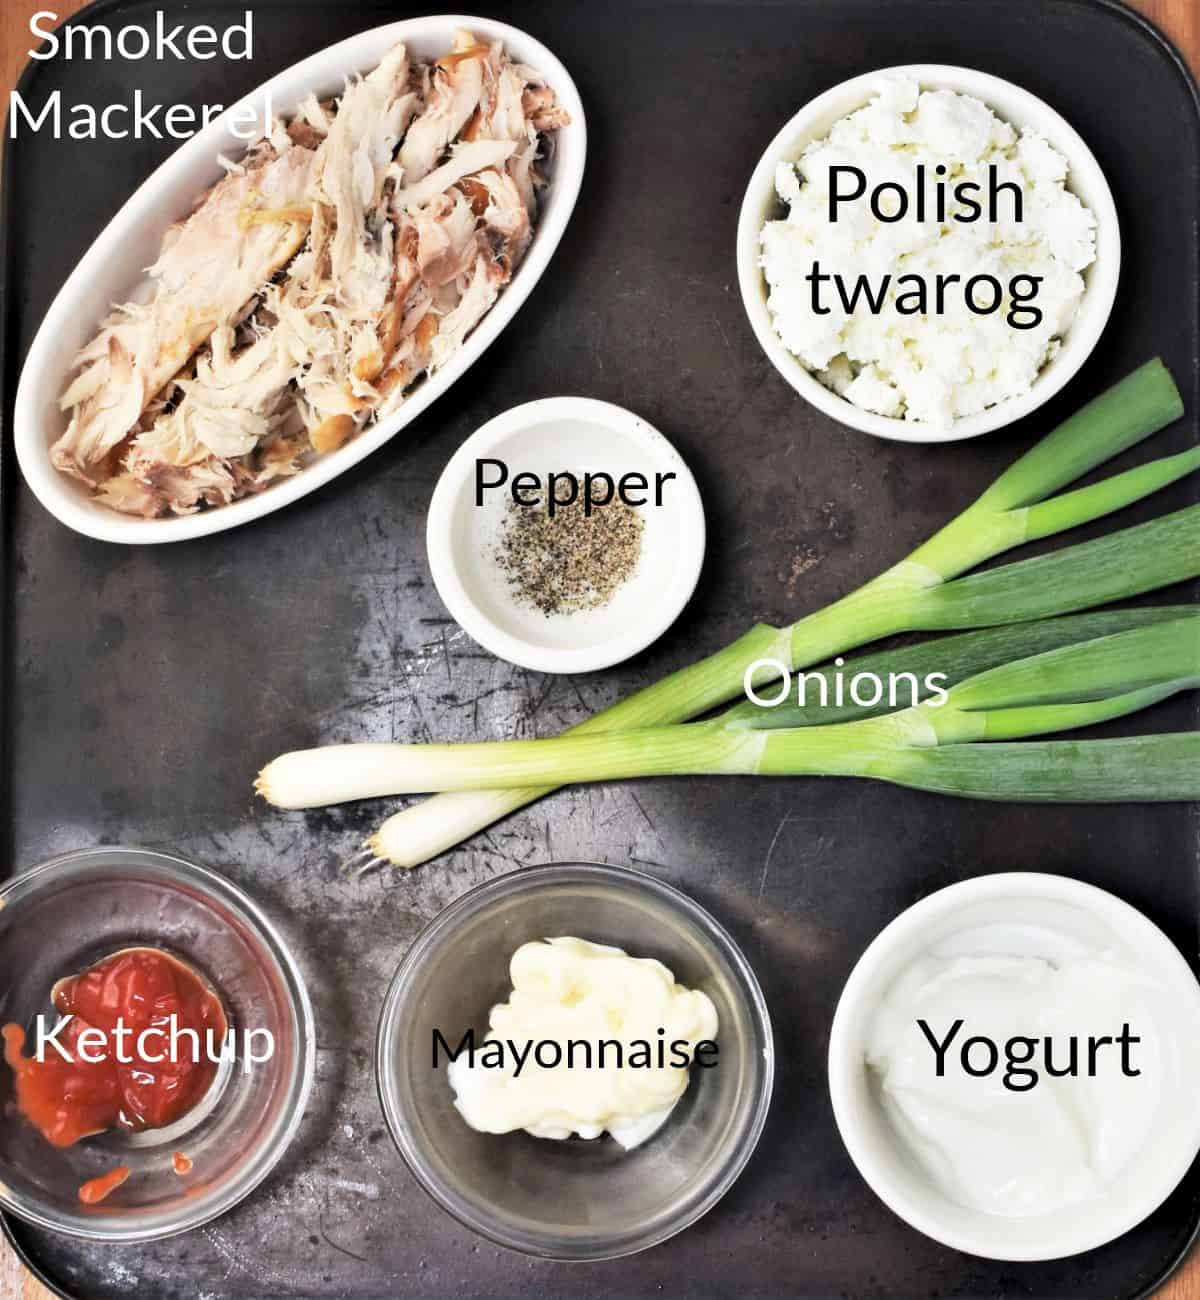 Ingredients for making Polish smoked mackerel spread.